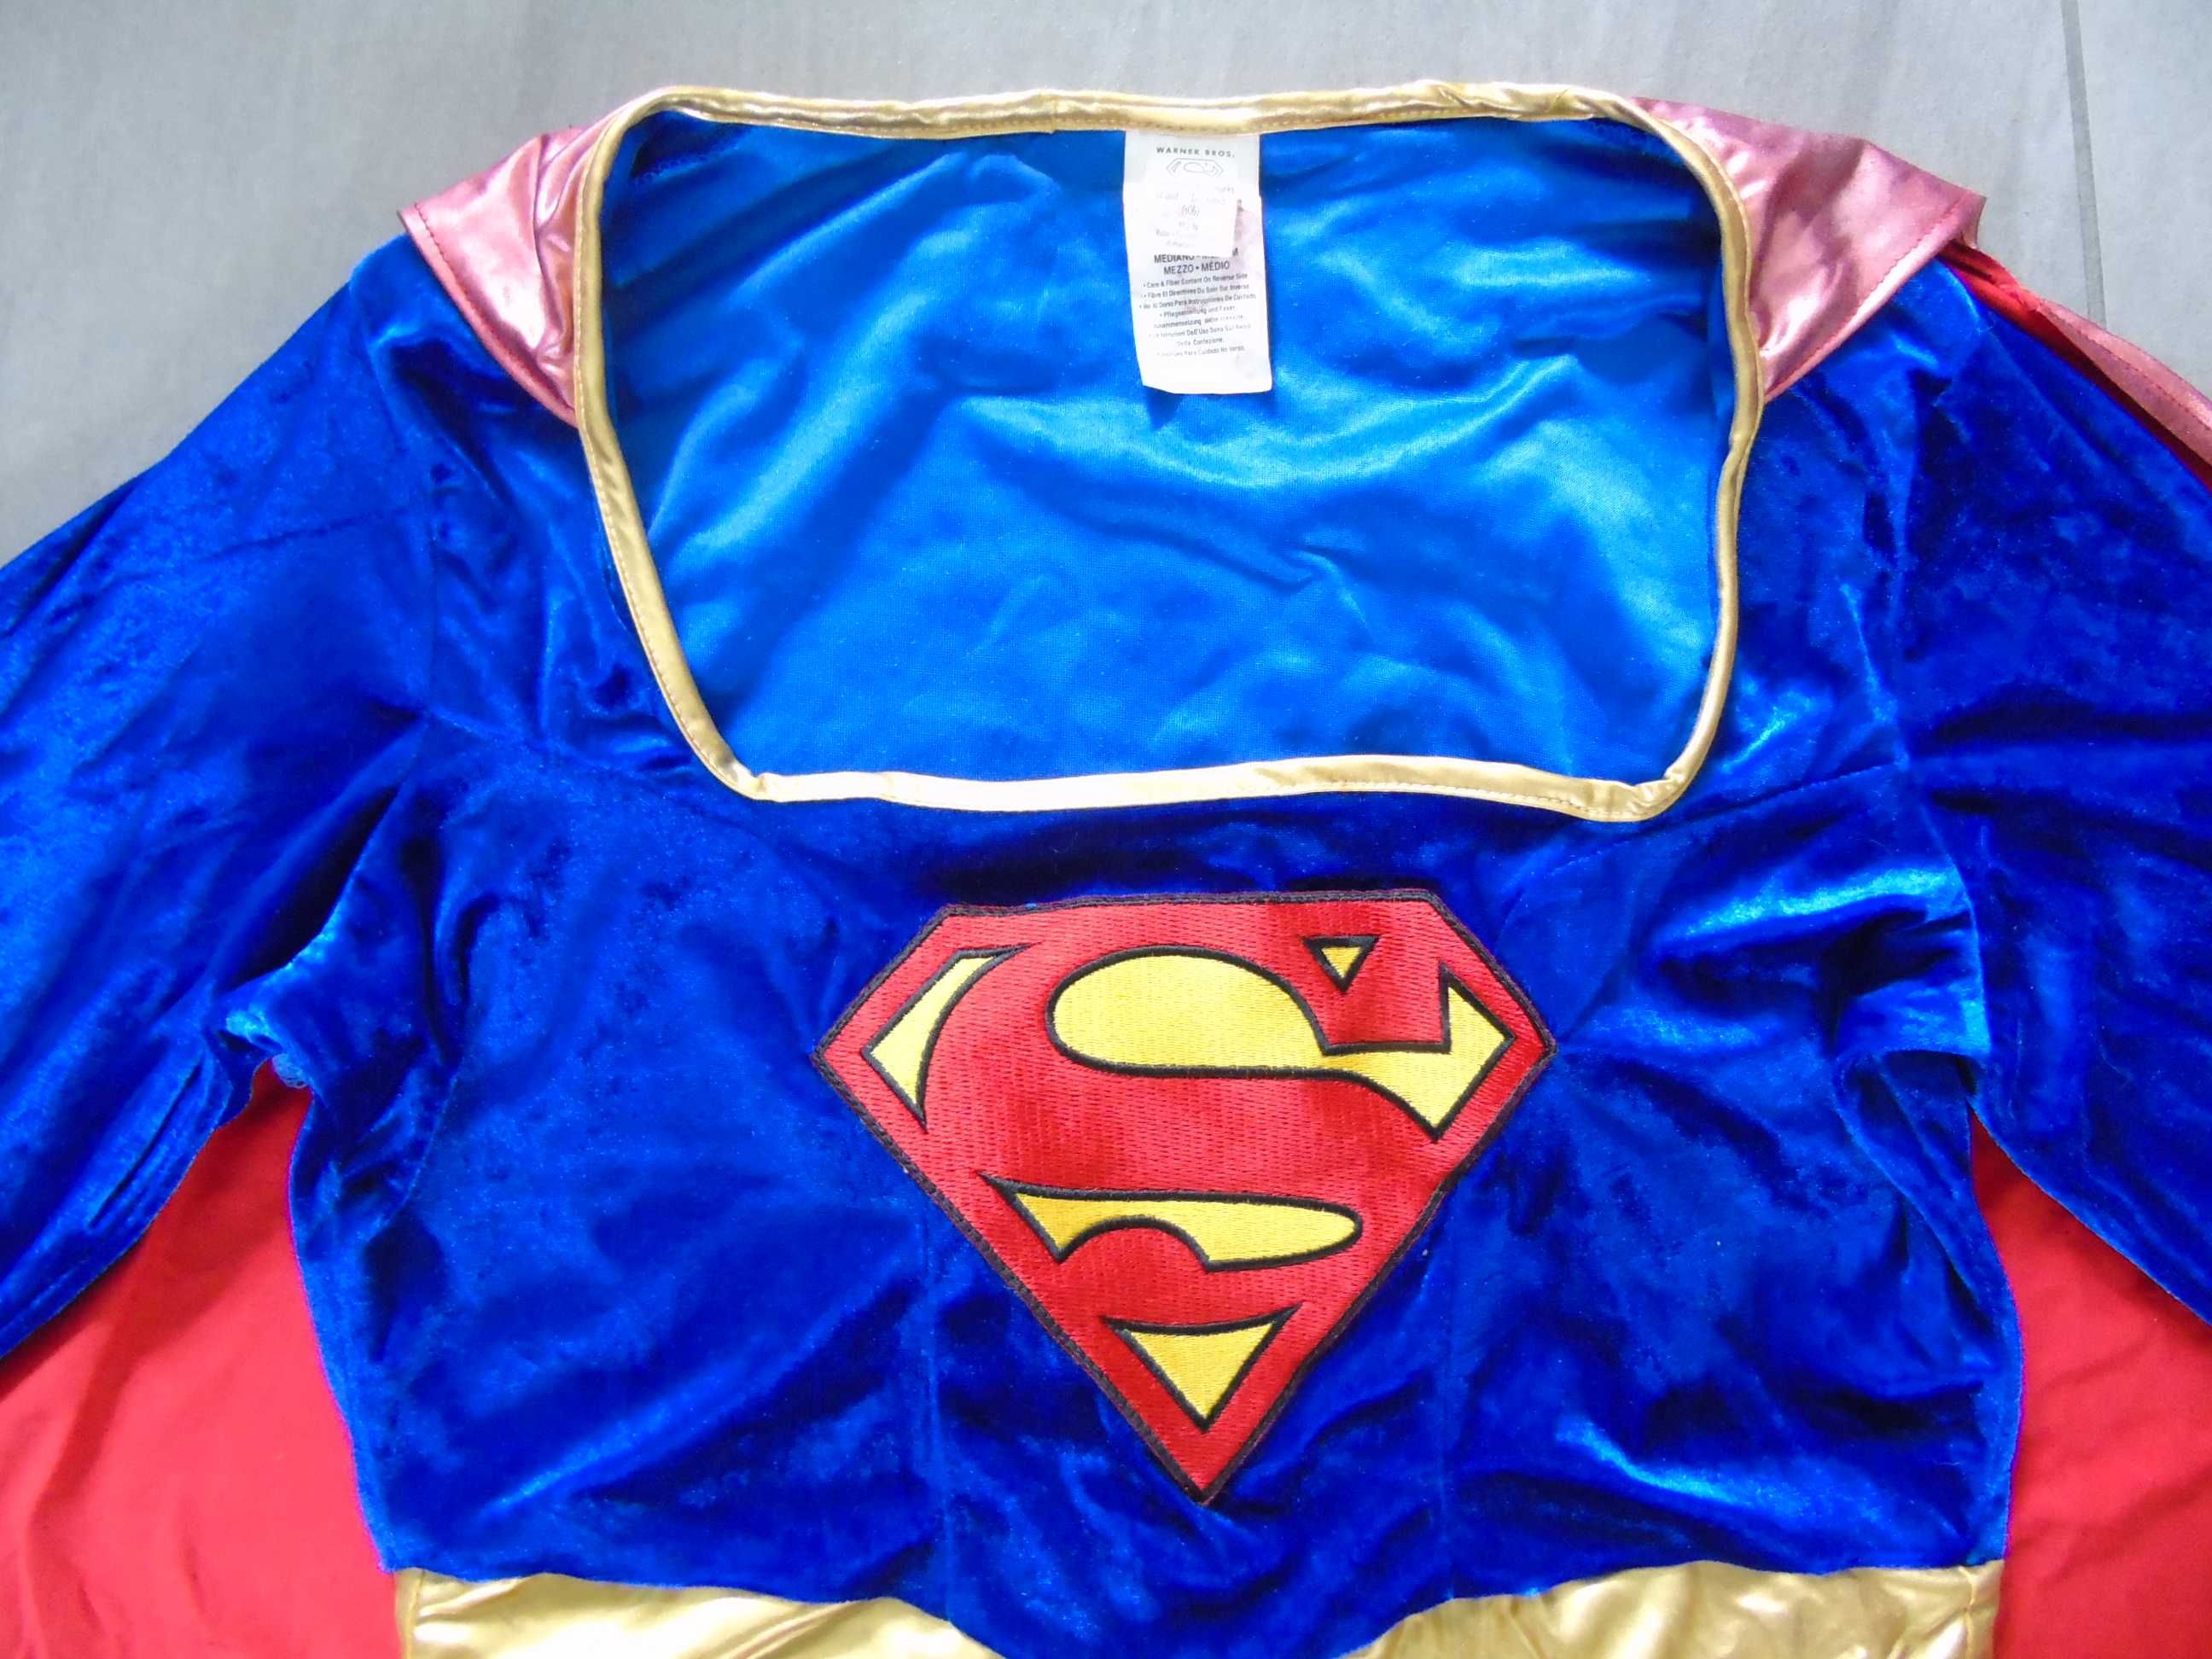 strój karnawałowy Superman-ka  M/L